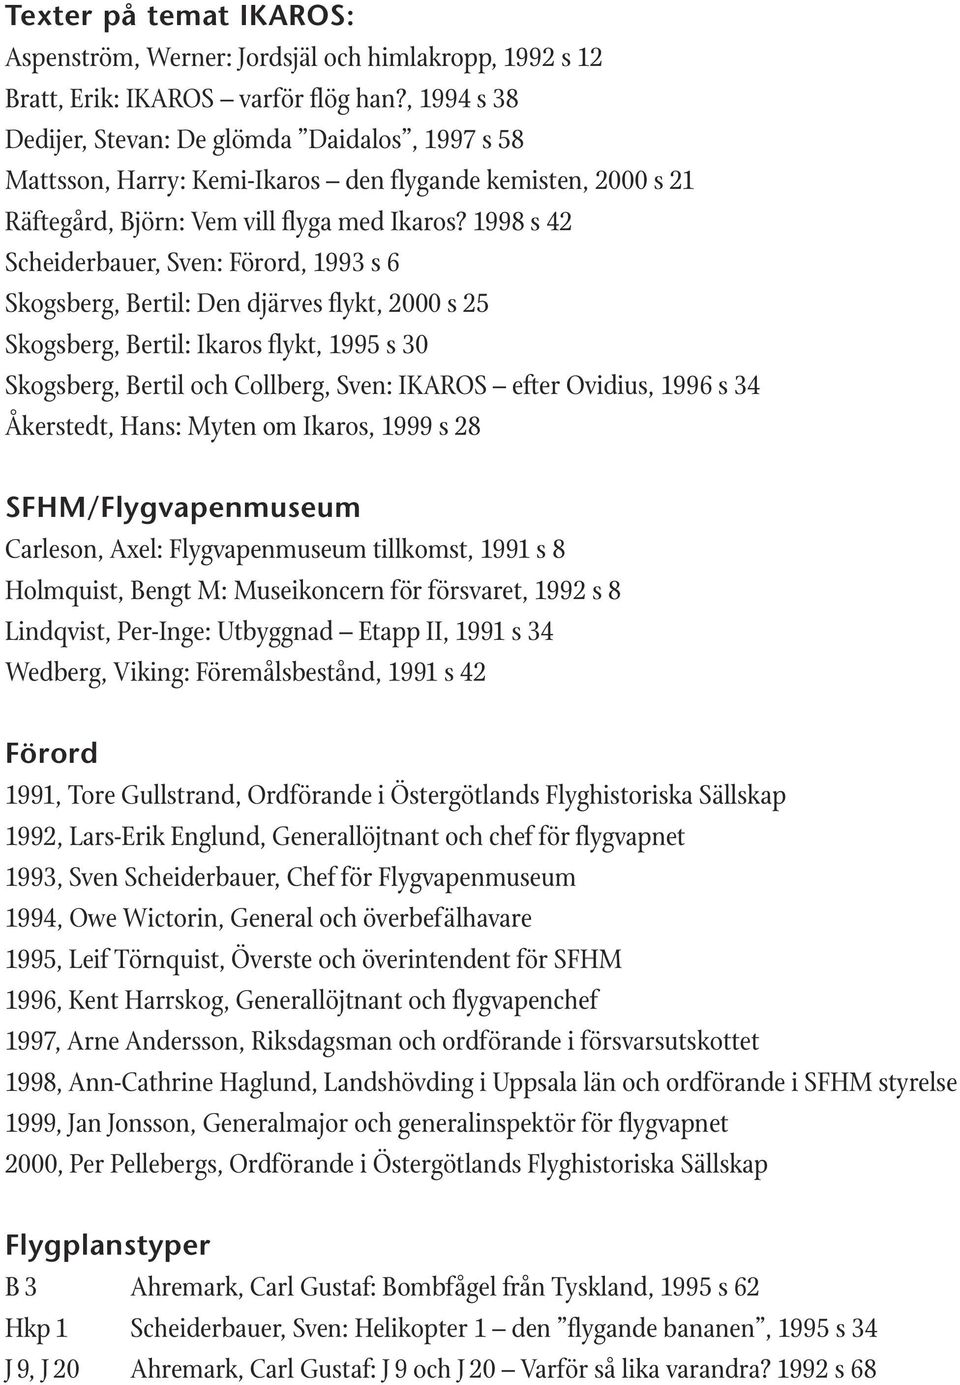 1998 s 42 : Förord, 1993 s 6 Skogsberg, Bertil: Den djärves flykt, 2000 s 25 Skogsberg, Bertil: Ikaros flykt, 1995 s 30 Skogsberg, Bertil och Collberg, Sven: IKAROS efter Ovidius, 1996 s 34